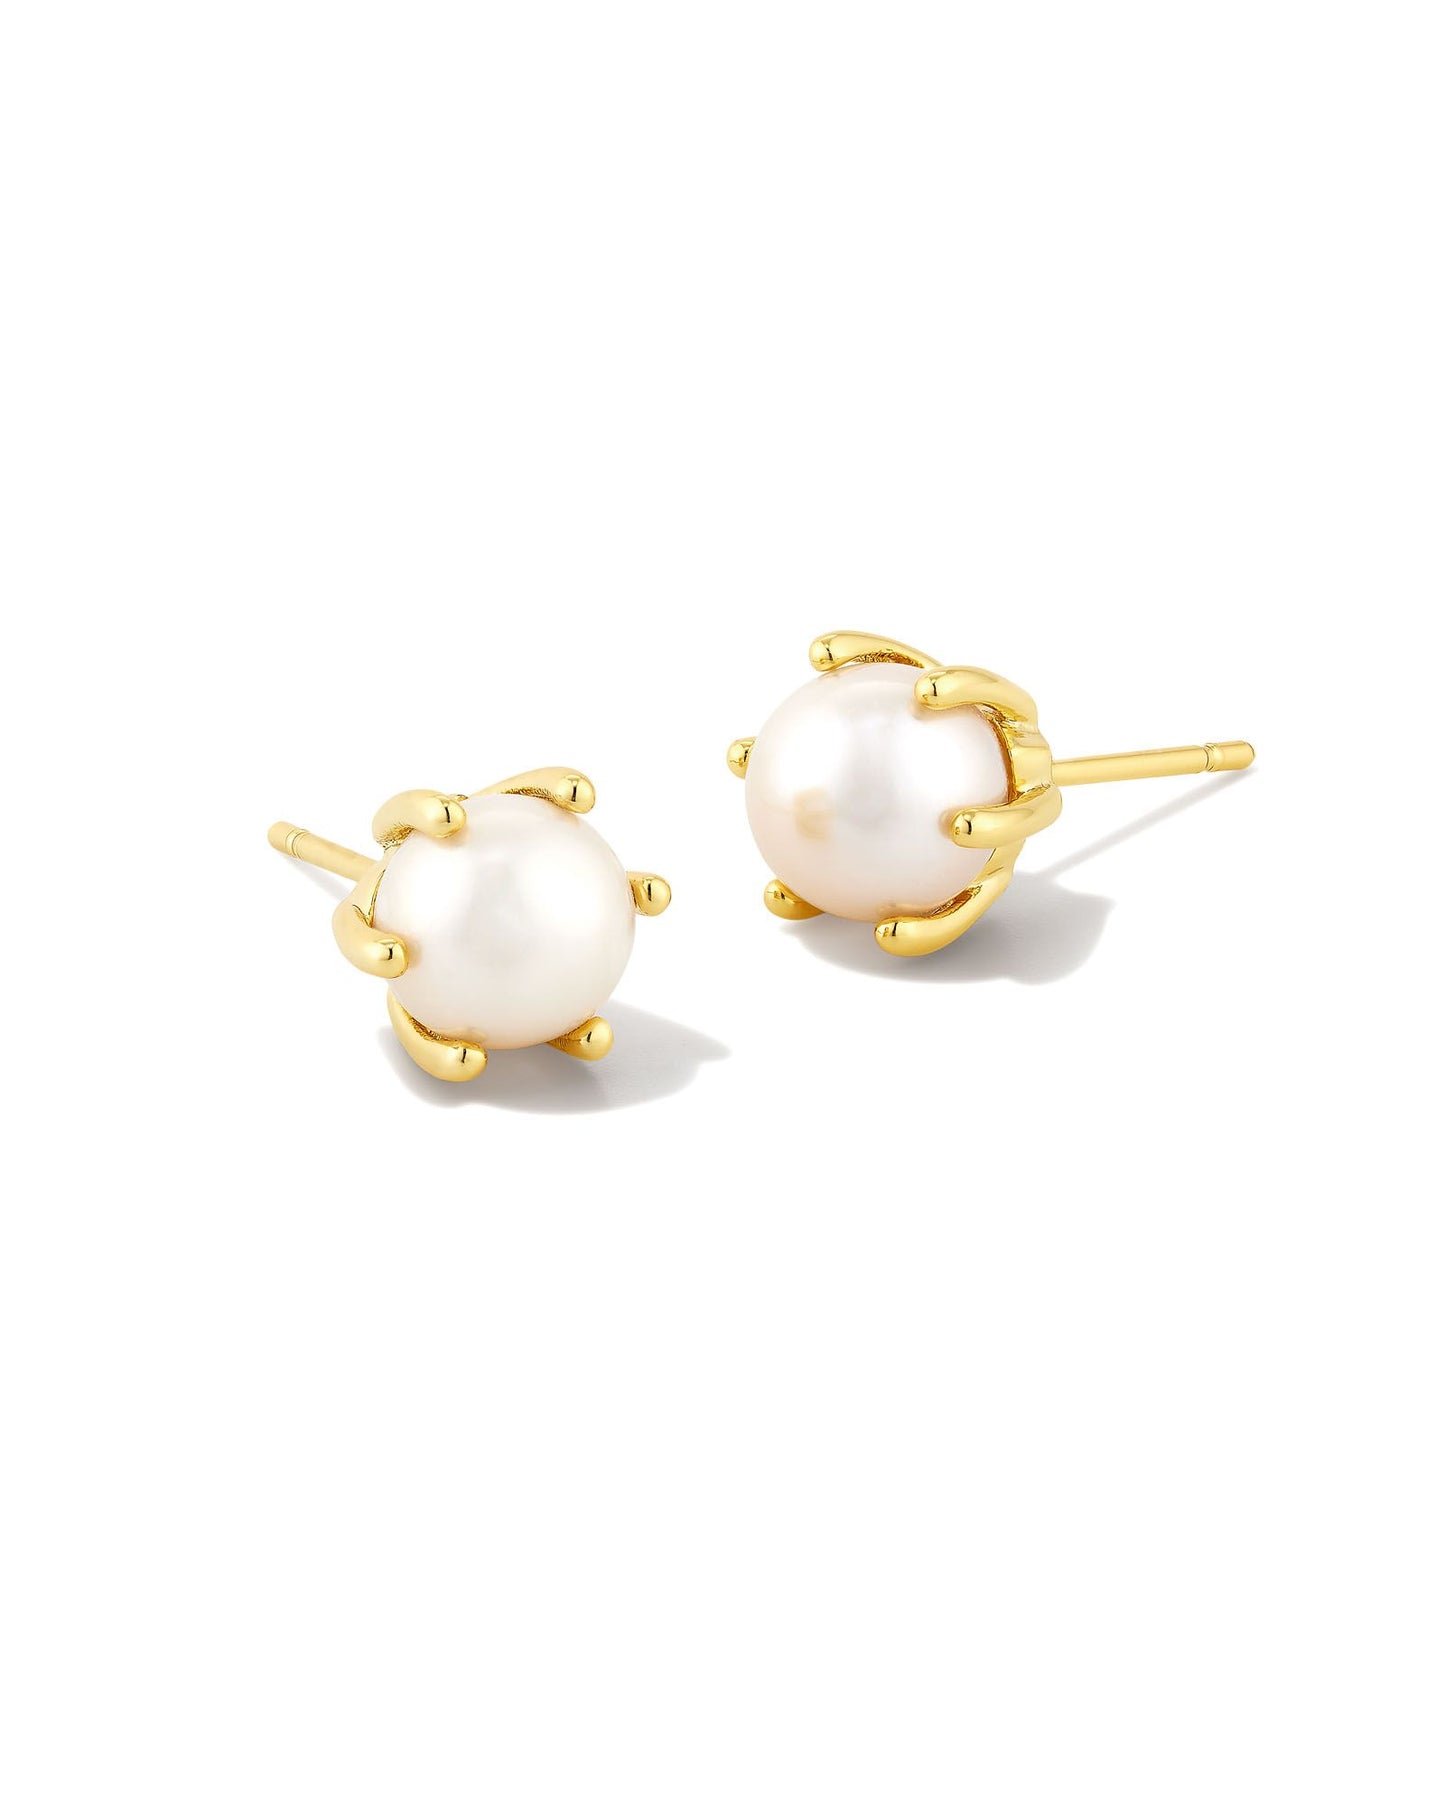 Kendra Scott Ashton Pearl Stud Earrings - Gold White Pearl